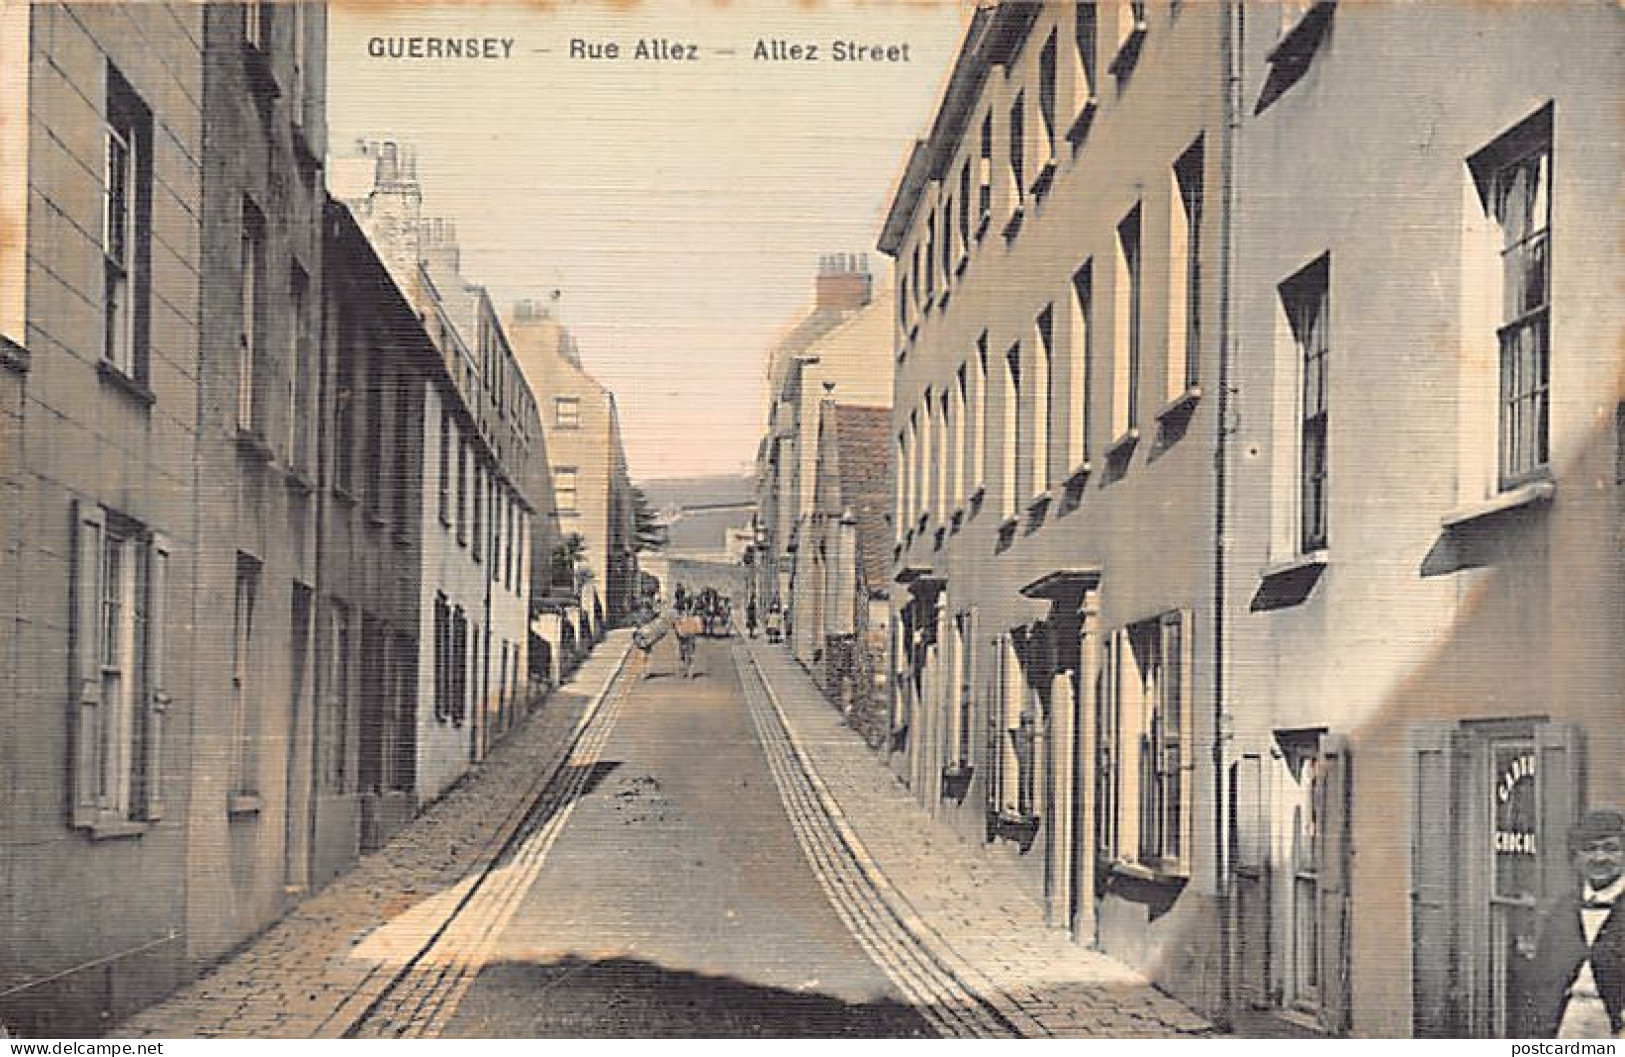 Guernsey - ST. PETER PORT - Allez Street - Publ. Unknwon  - Guernsey